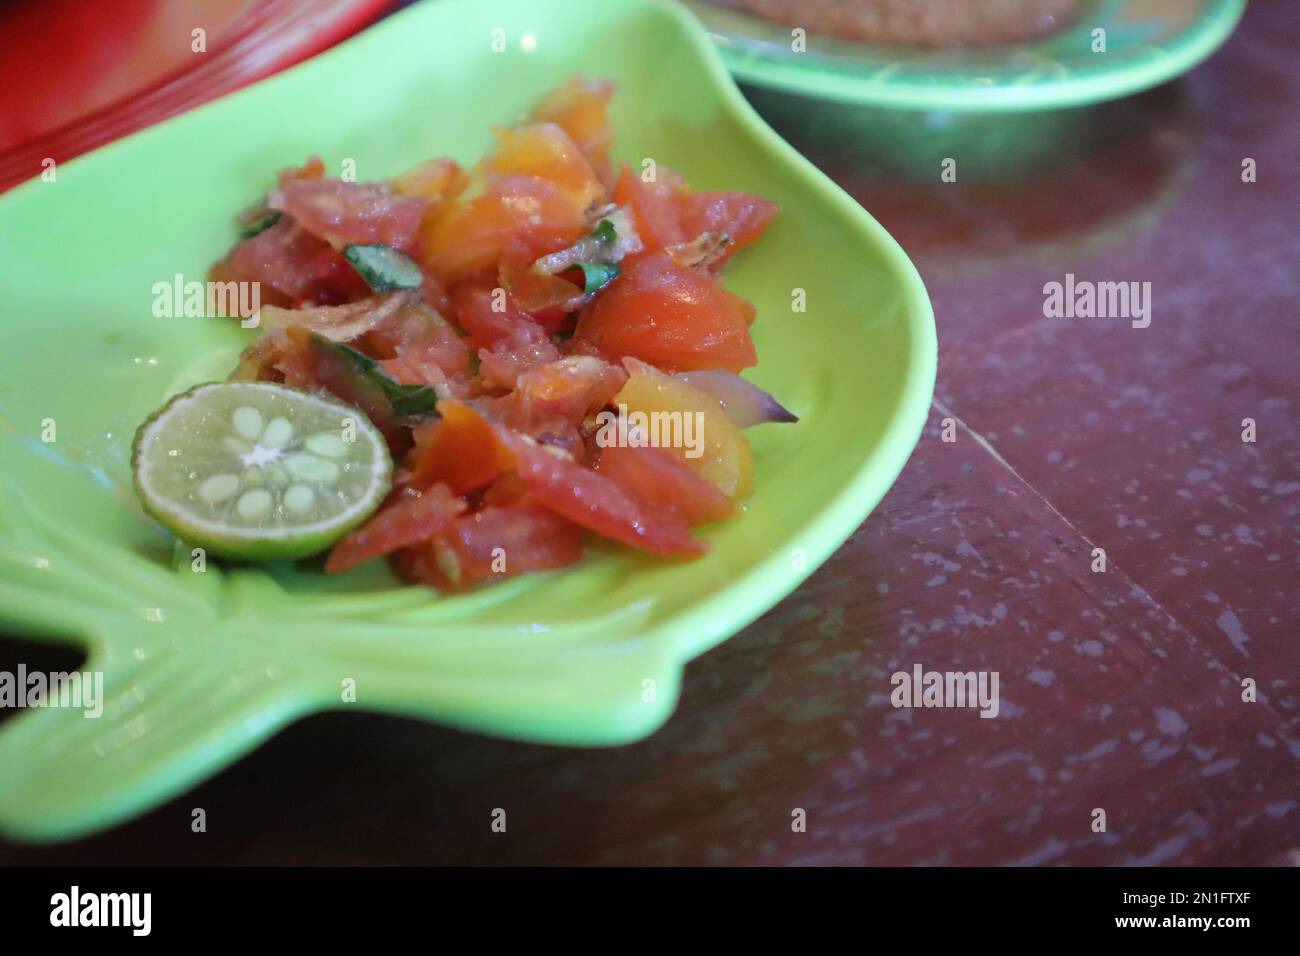 Tomate Sambal oder scharfe Tomate Sambal mit Zutaten, Schalotten, roten Chilis, Knoblauch und Salz. Serviert mit gegrilltem Fisch. Stockfoto